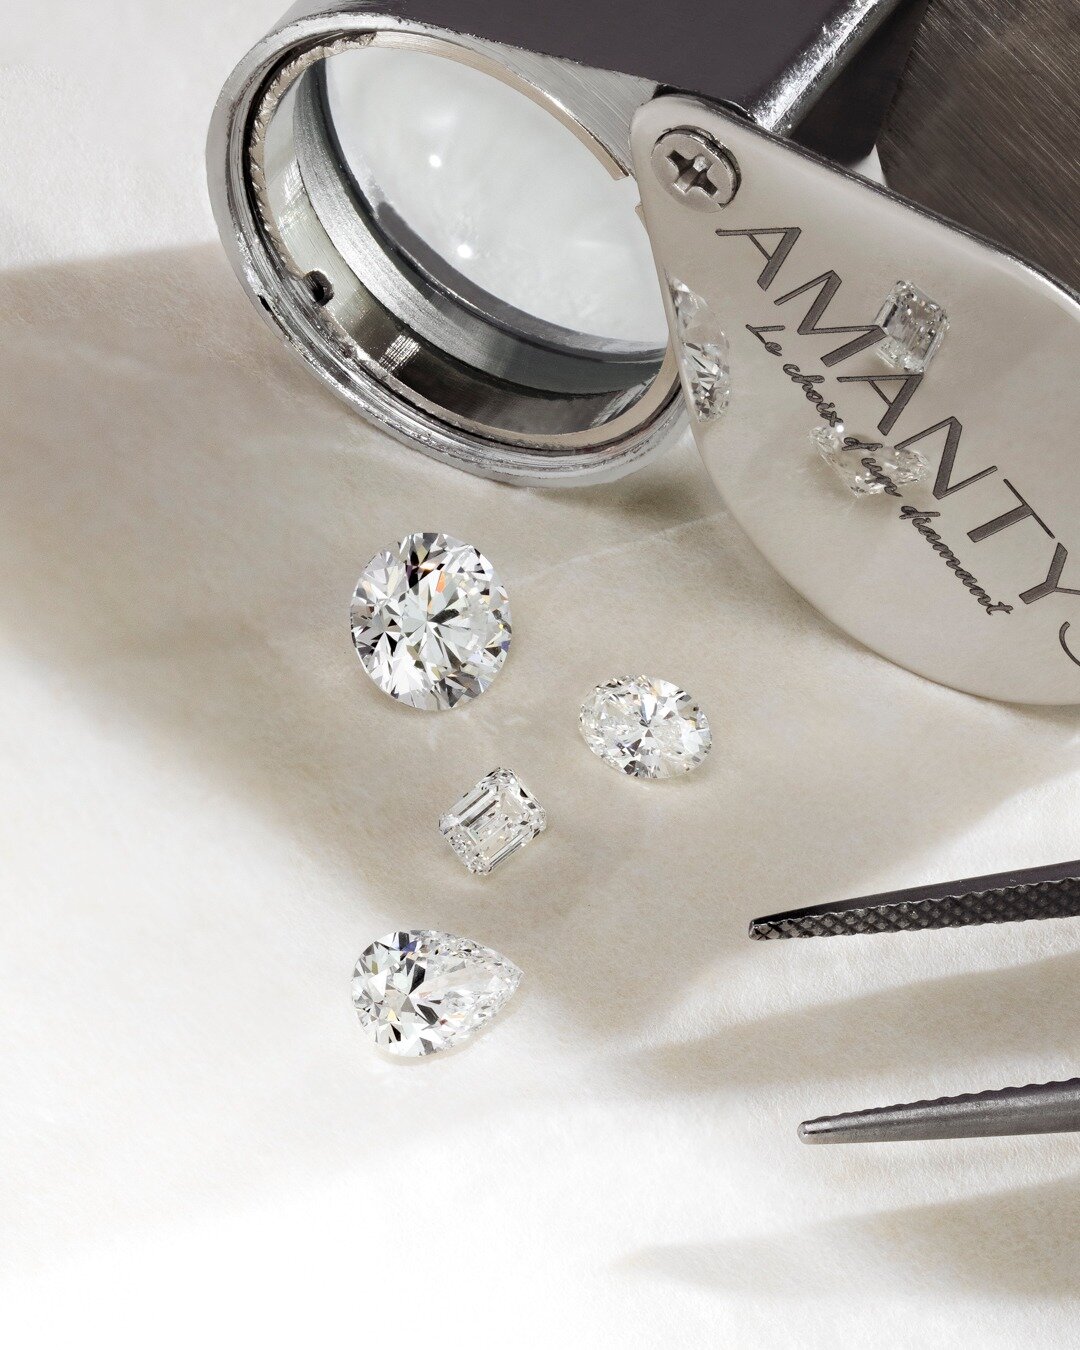 Personnalisez votre bague diamant à Paris 75001 - 5 rue de l'Echelle